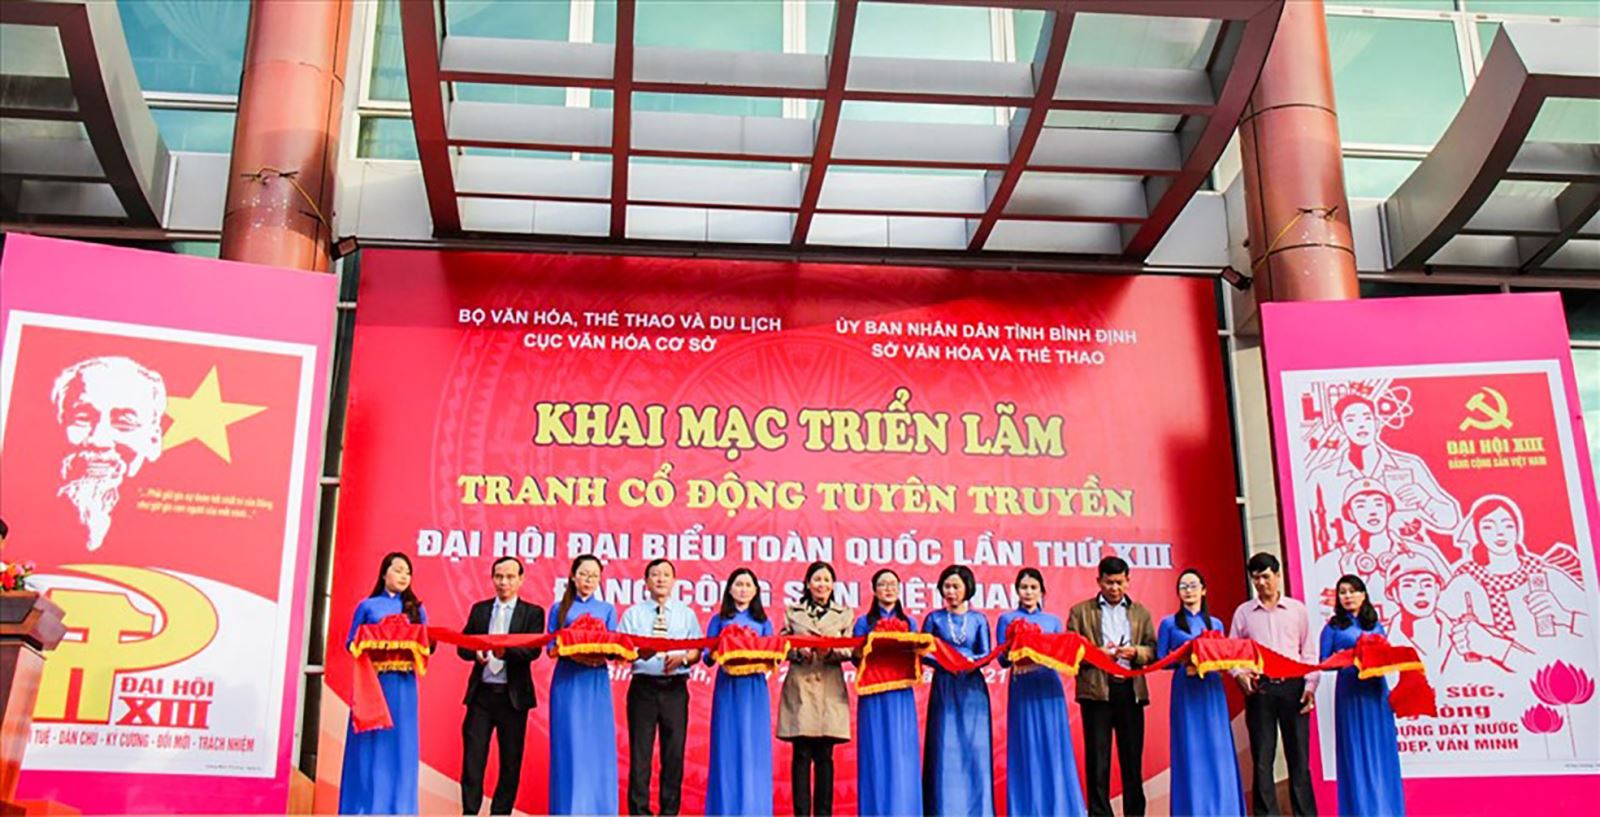 Triển lãm tranh cổ động tuyên truyền Đại hội lần thứ XIII của Đảng Cộng sản Việt Nam